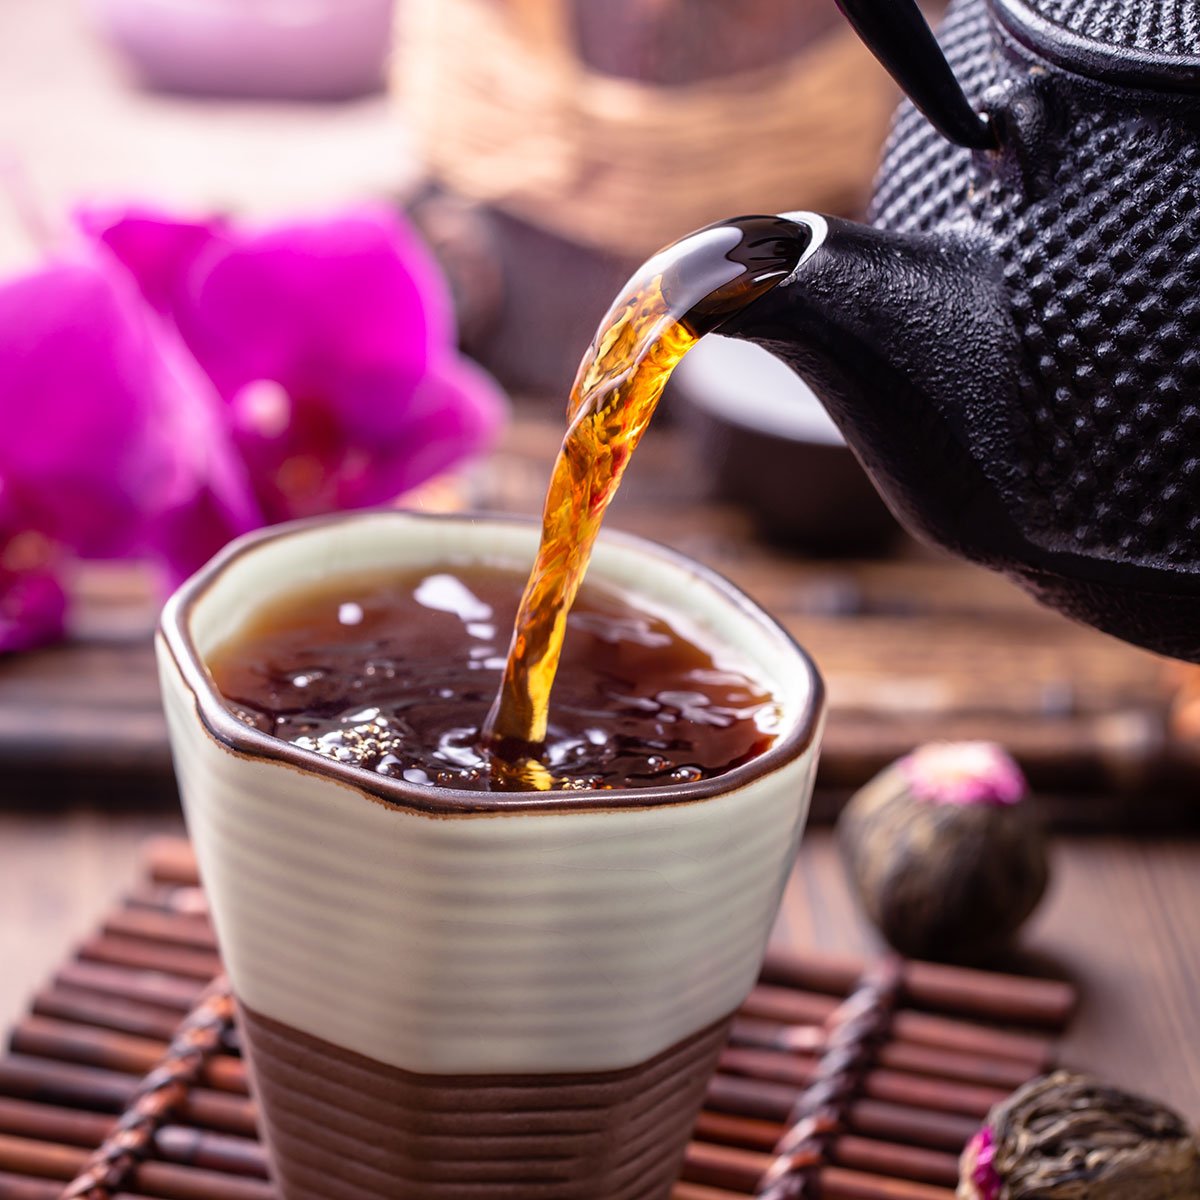 kenali 11 manfaat teh hitam yang bagus untuk kesehatanmu merangsang daya fokus